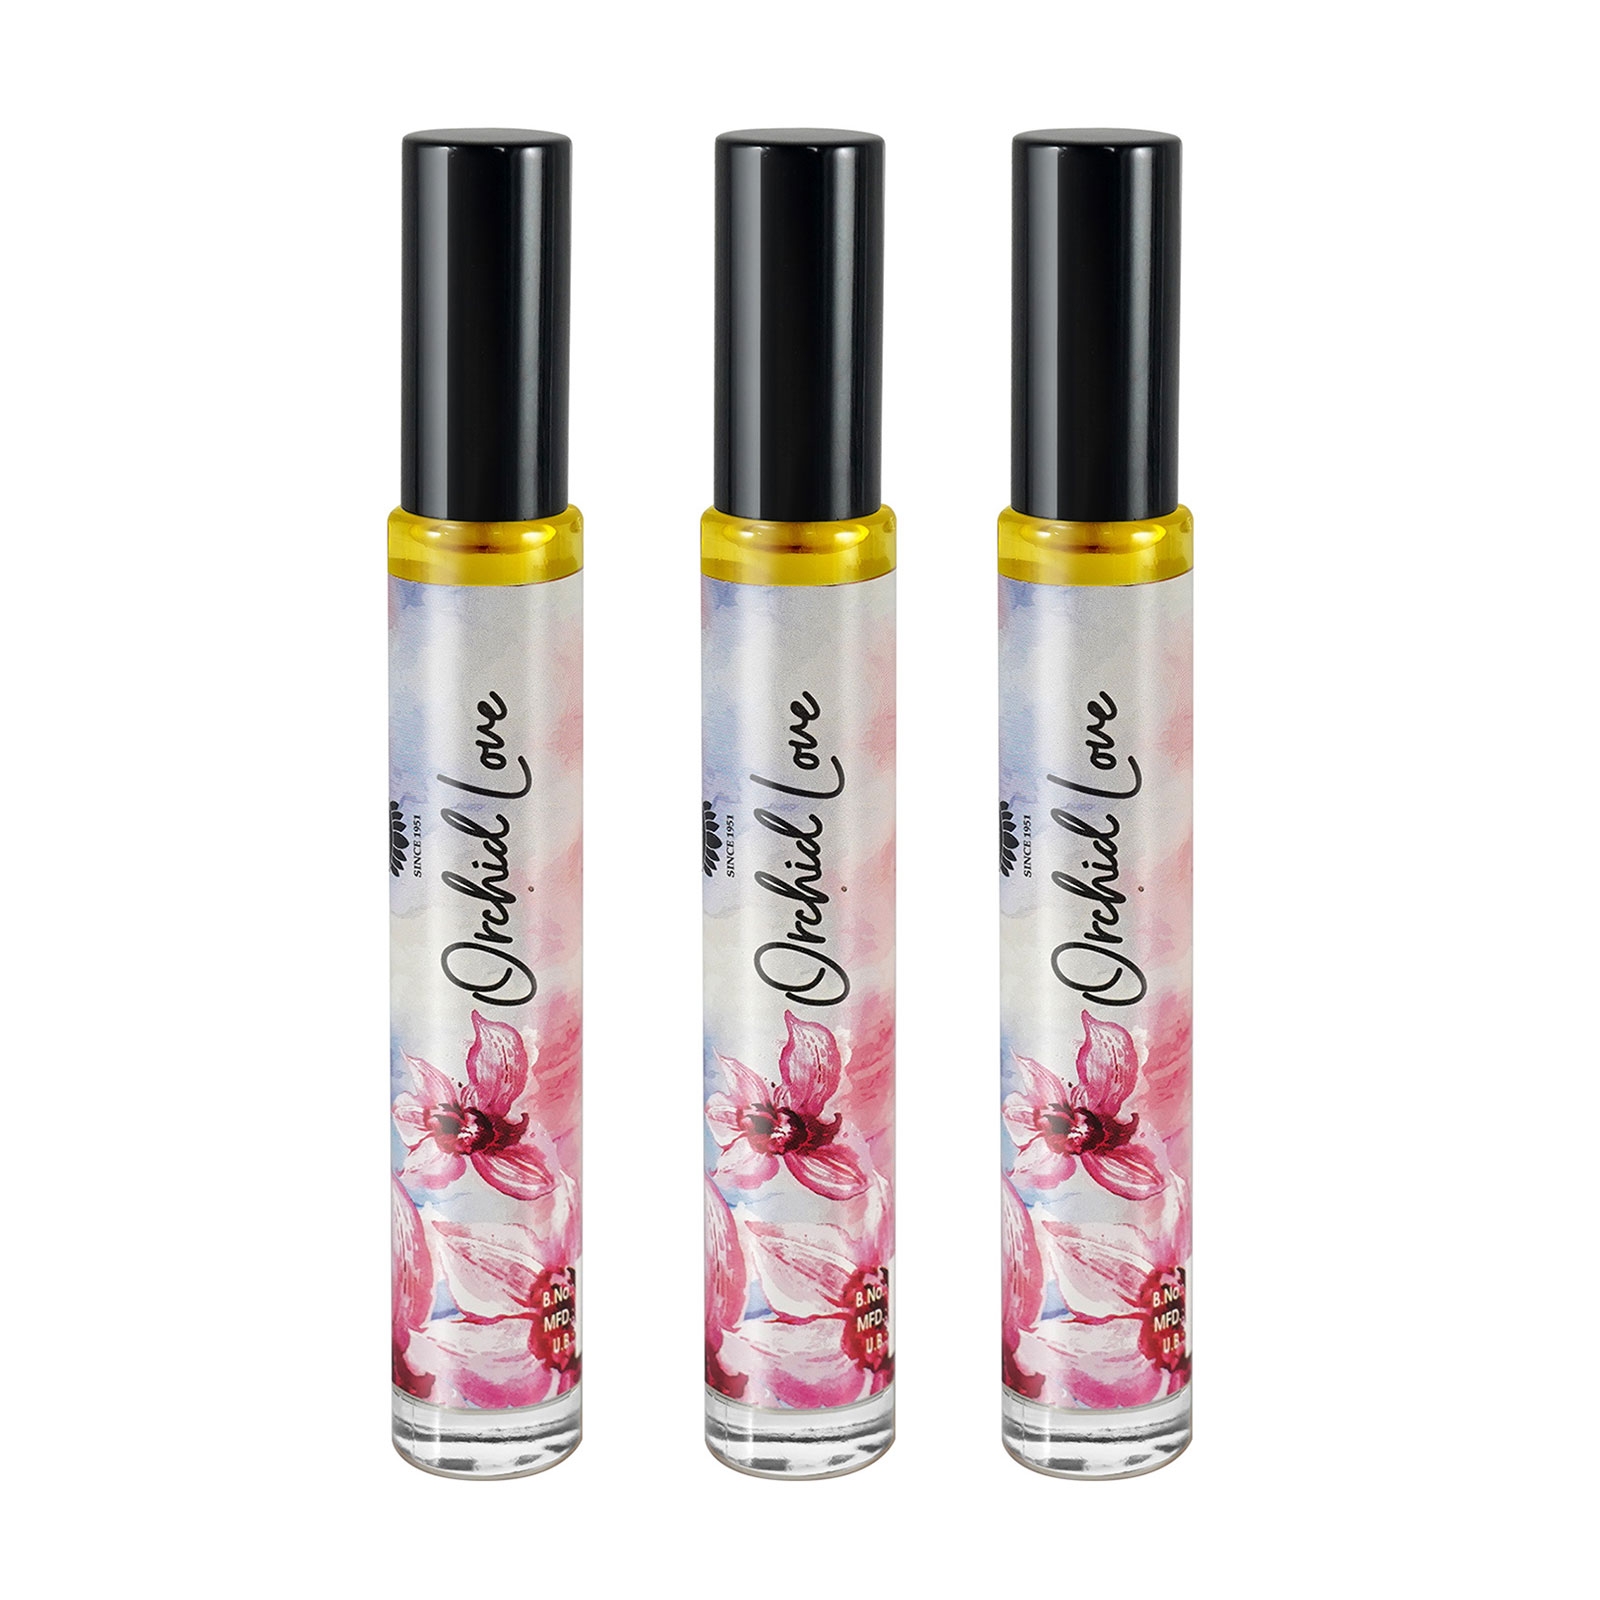 Buy Ajmal Emulse Eau De Parfum For Unisex Online